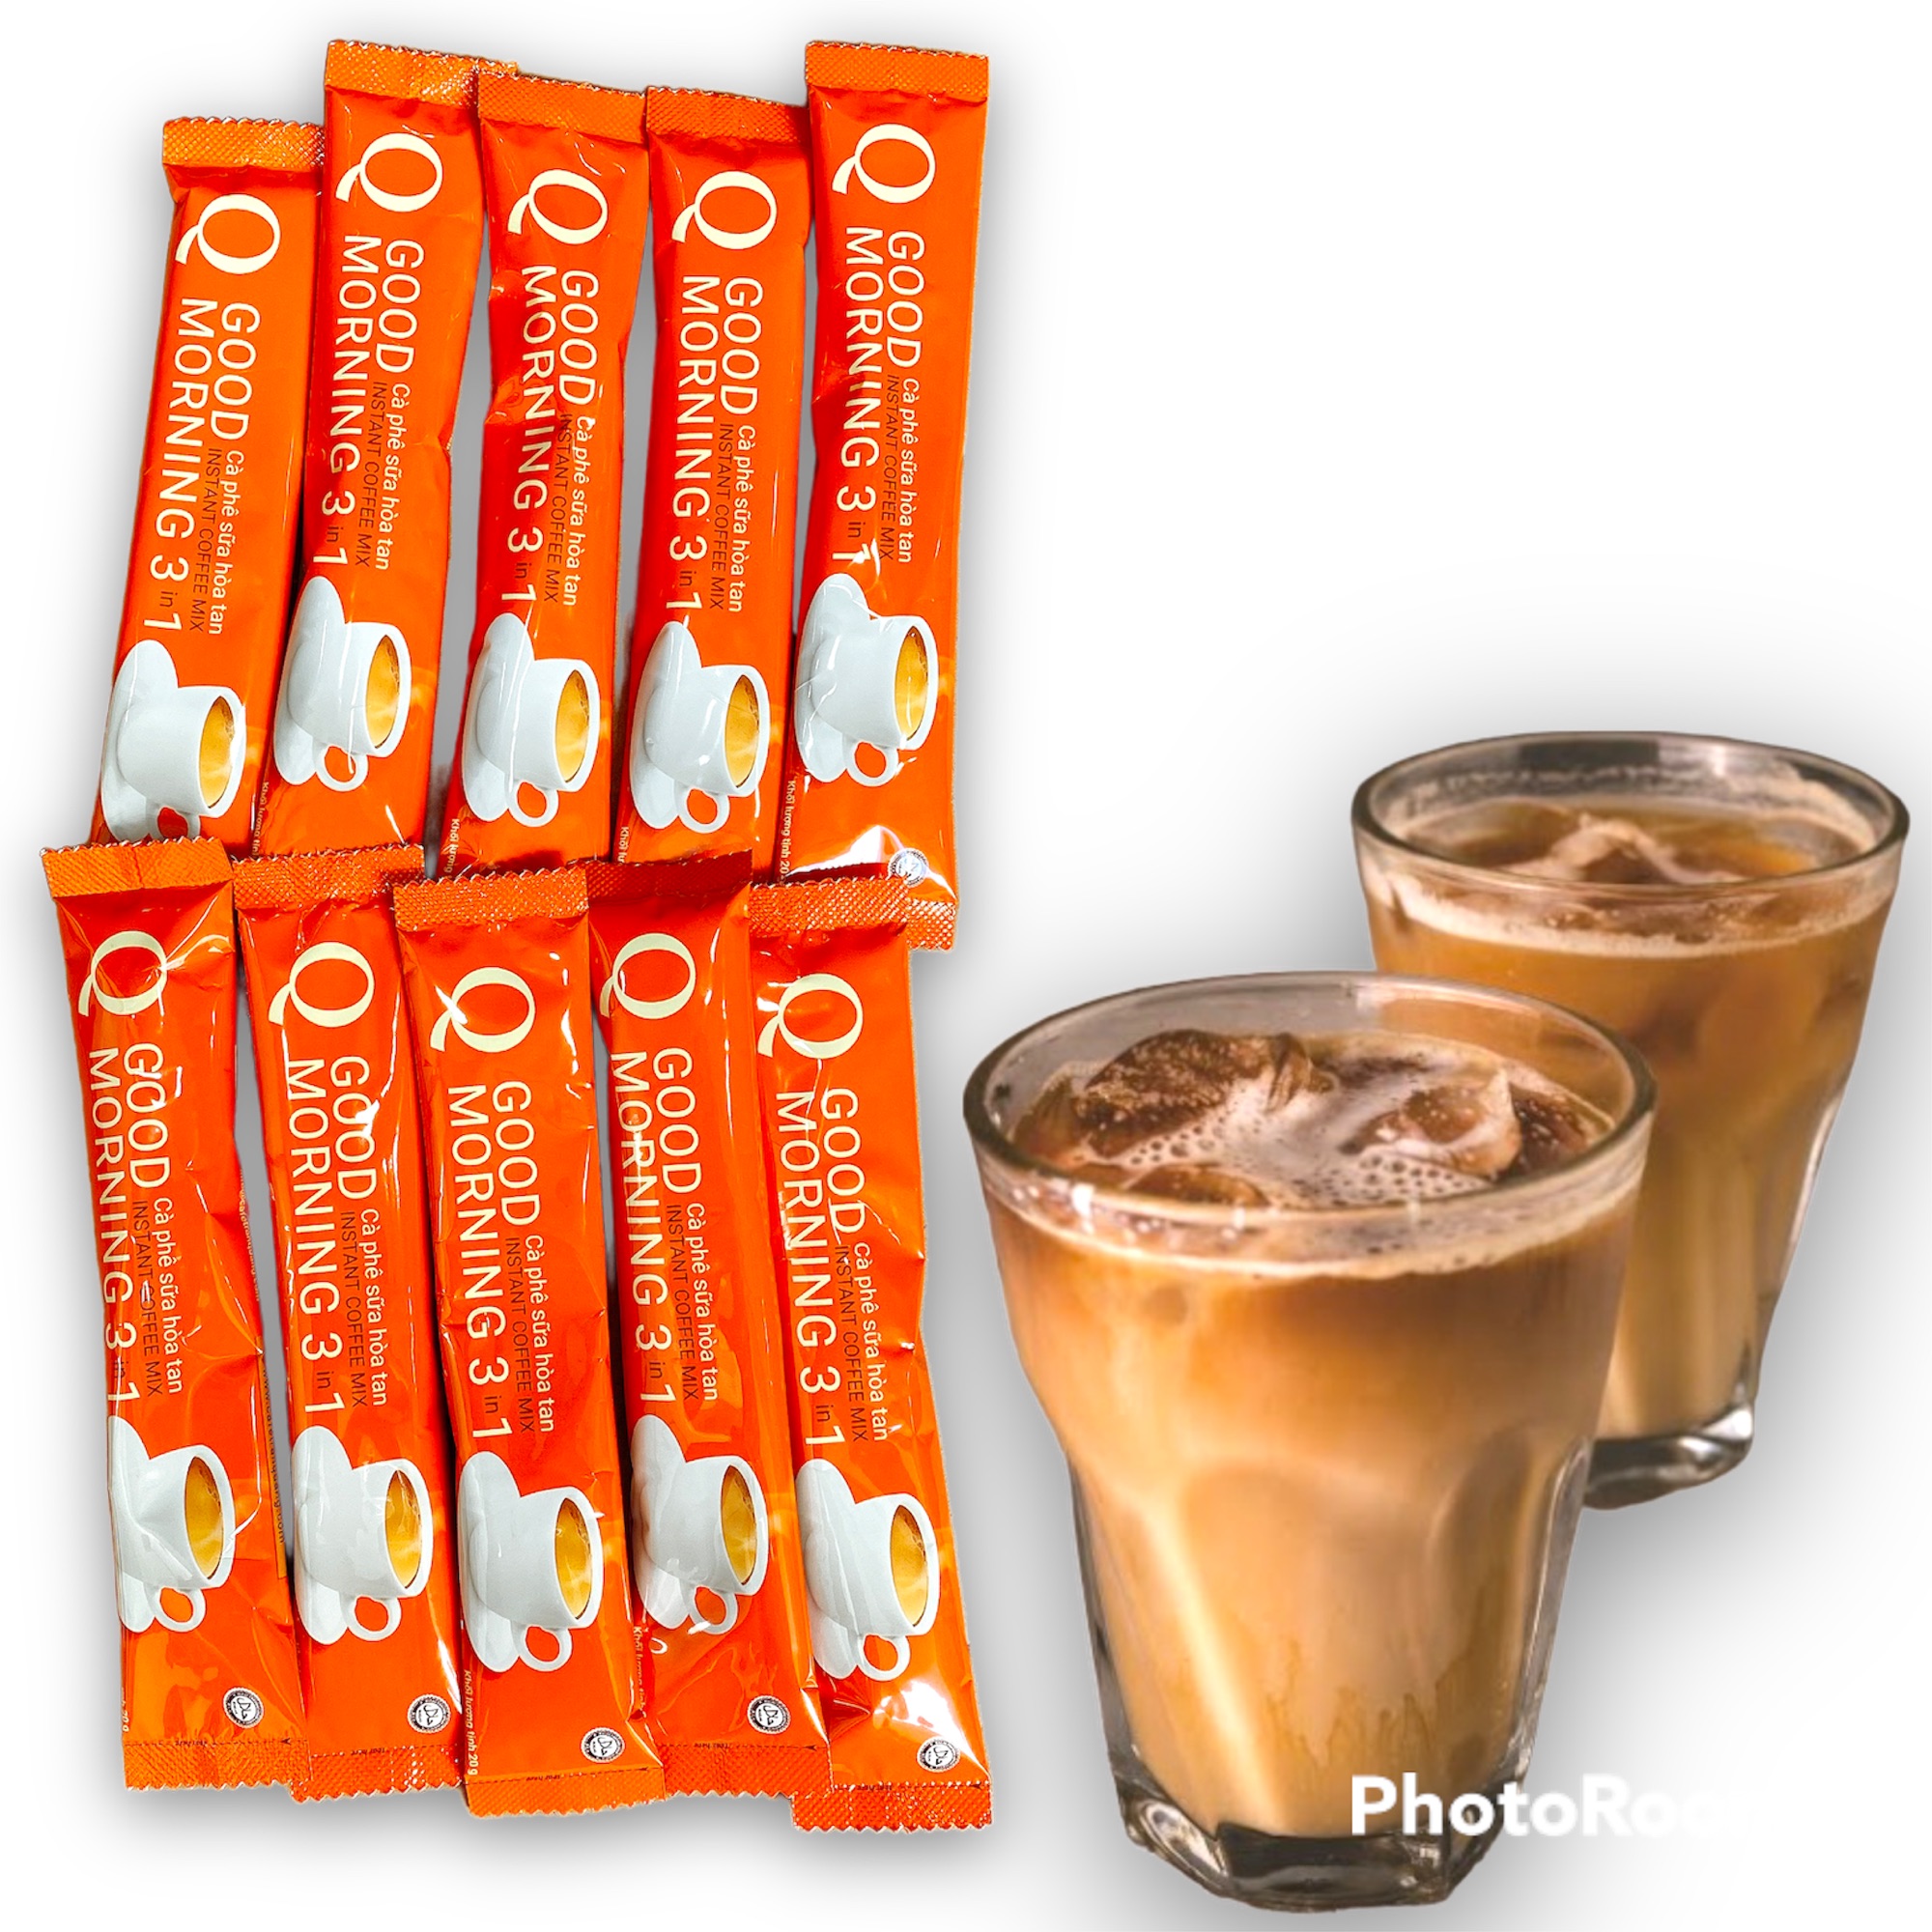 [UỐNG LÀ GHIỀN] Combo 50 gói Cà phê sữa Q Good Morning Trần Quang vị truyền thống (Mỗi gói 20gram) -Có lựa chọn /40 gói/30 gói/20 gói/10gói - (Date mới 12 tháng) BÁCH HÓA UY TÍN